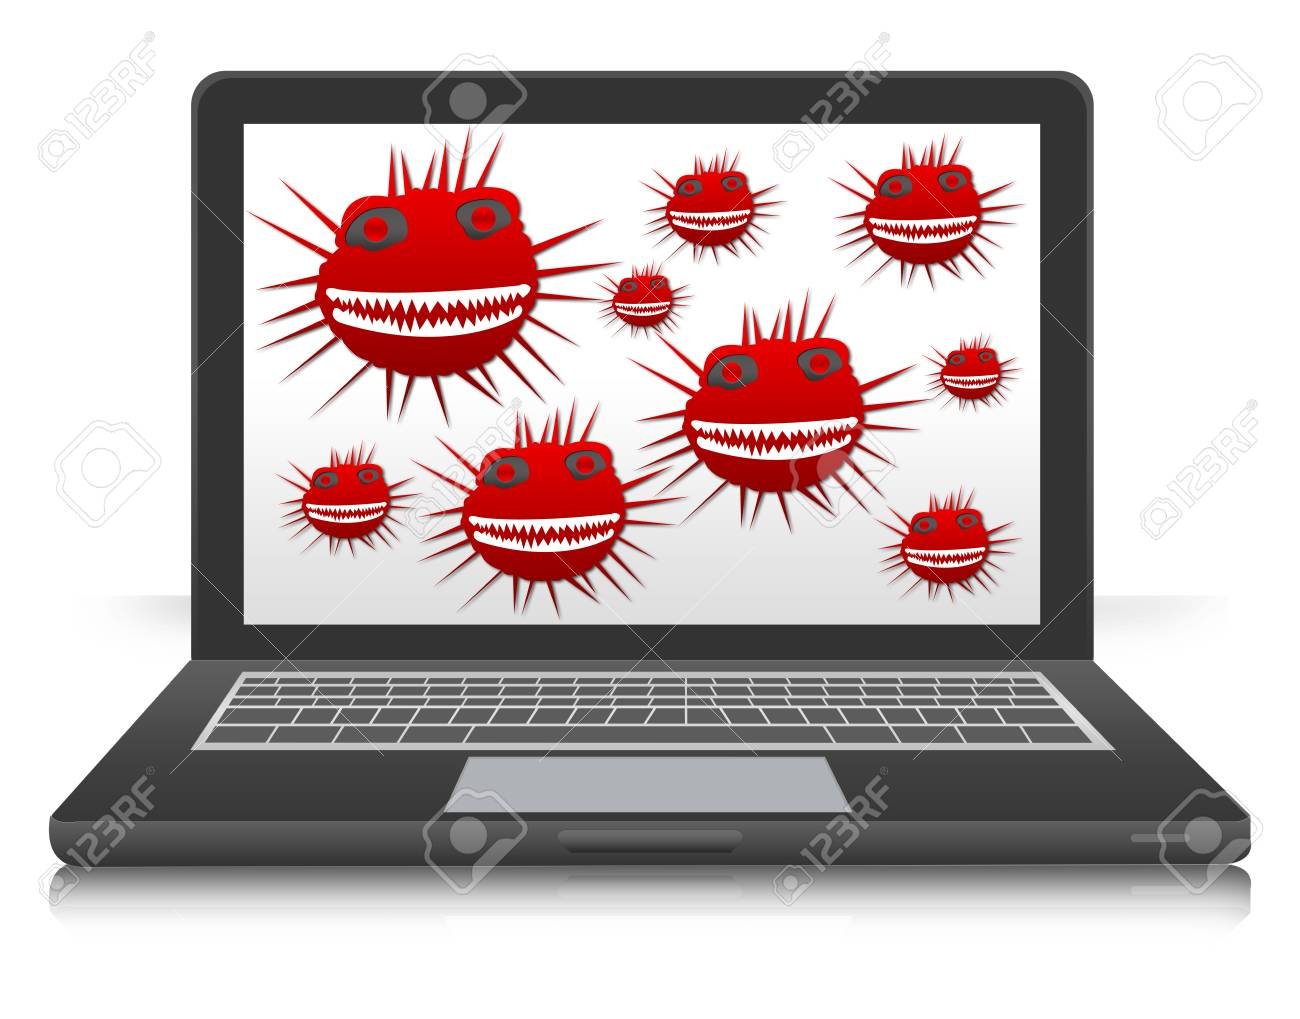 Get a virus. Компьютерные вирусы. Вирус на компьютере. Компьютерные вирусы картинки. Компьютерный вирус иллюстрация.